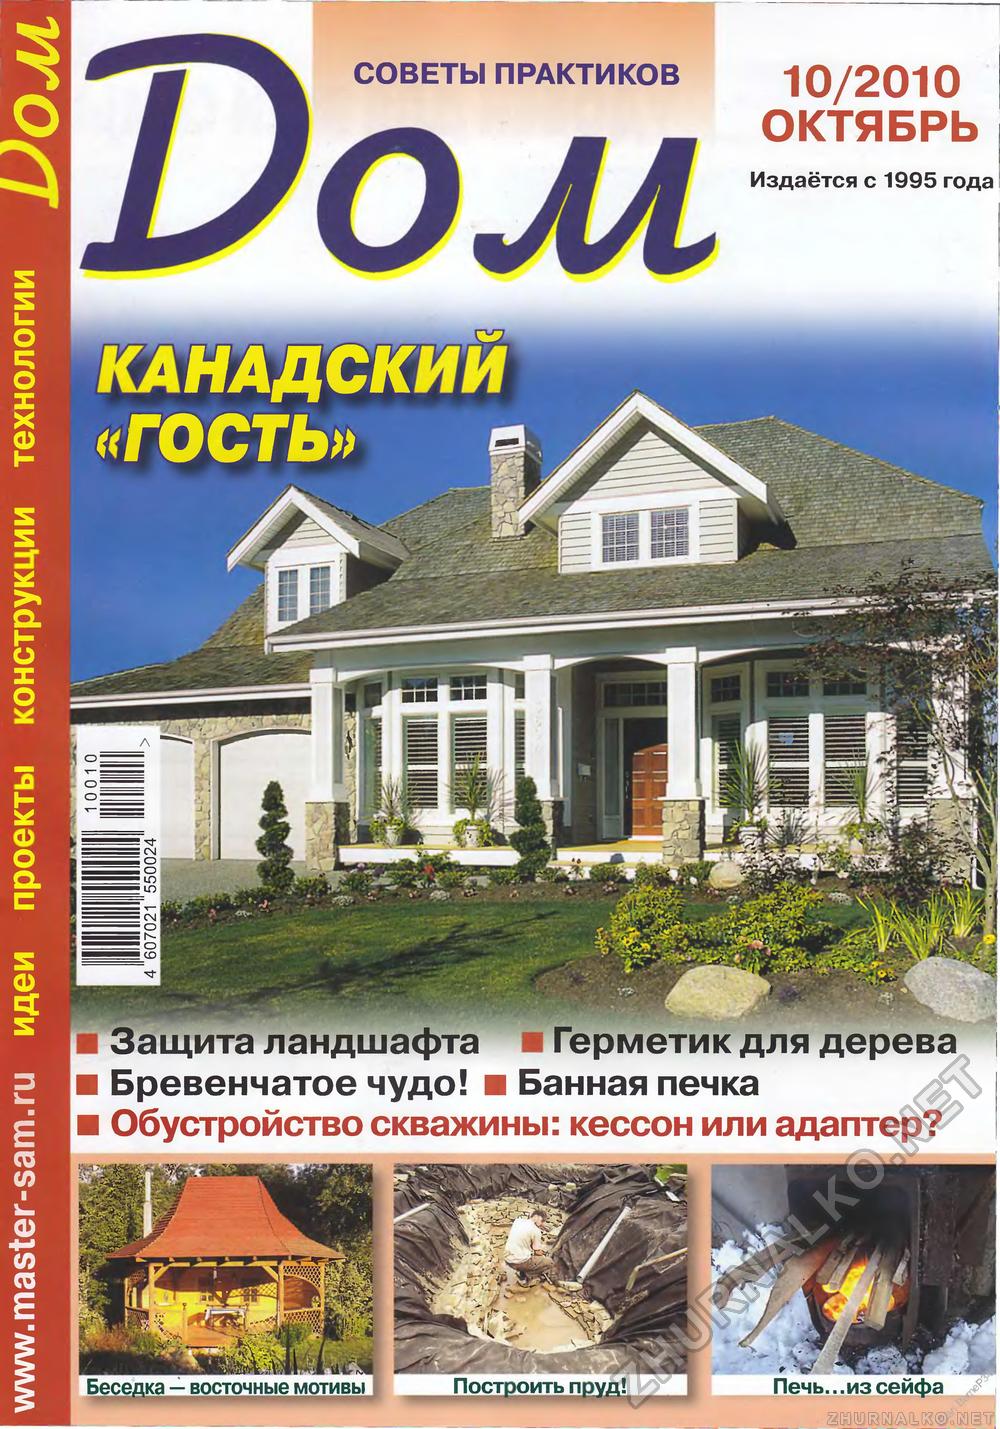 Дом 2010-10, страница 1